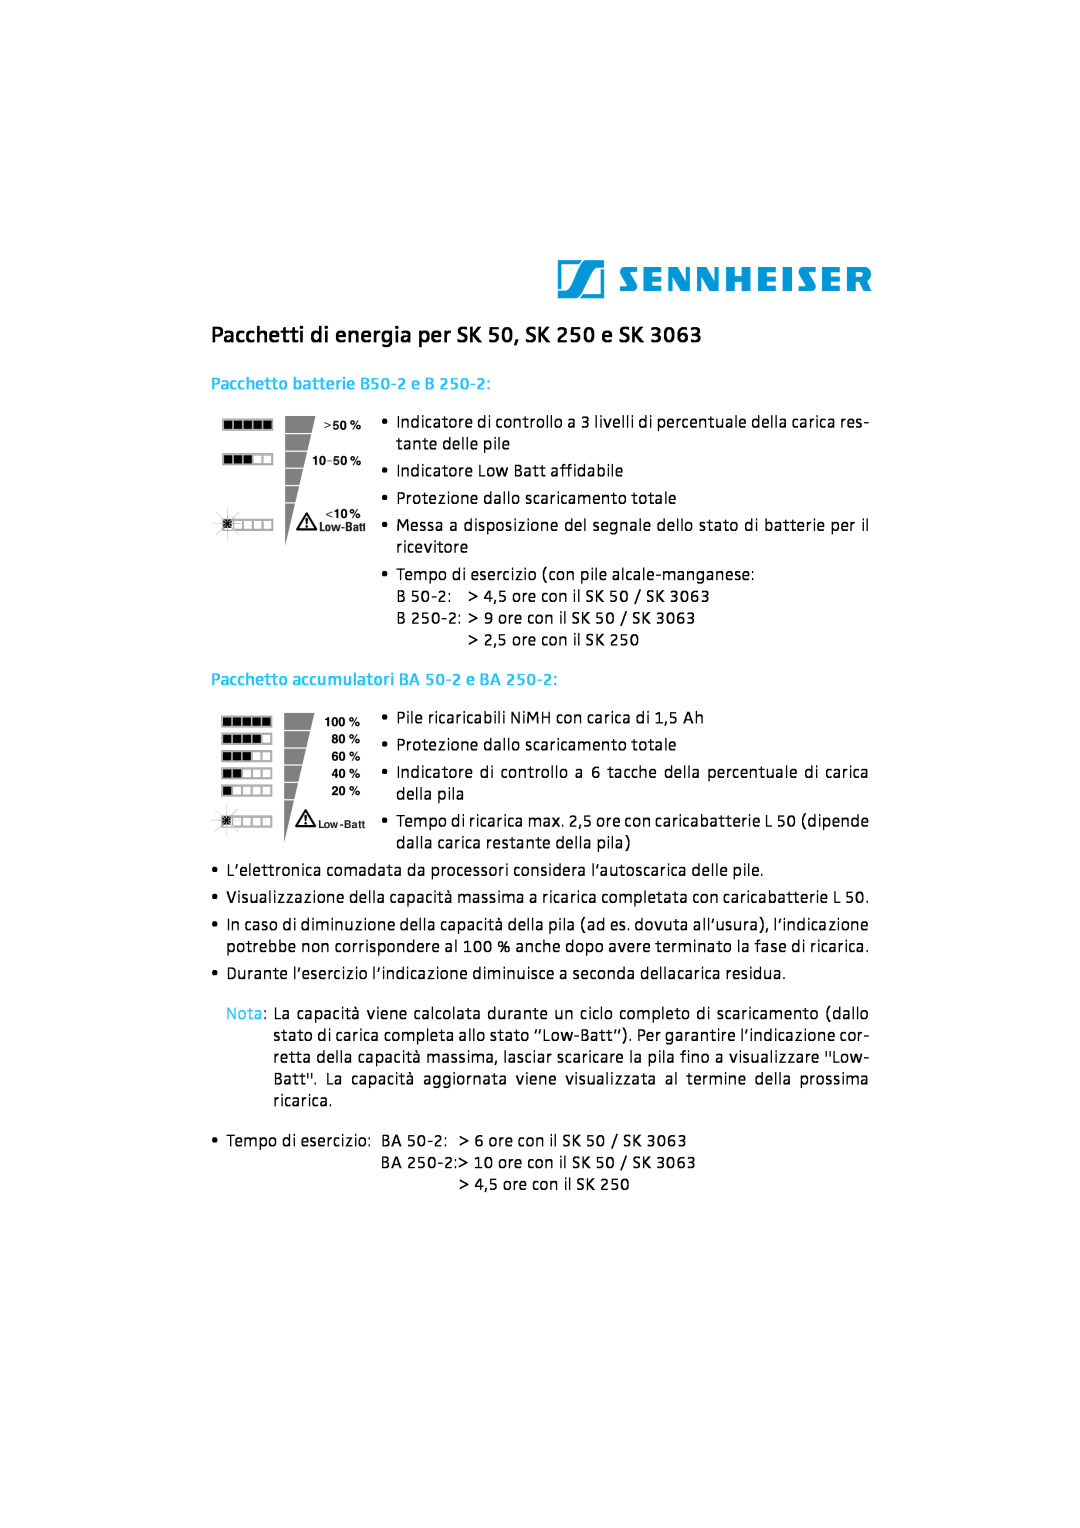 Sennheiser Pacchetti di energia per SK 50, SK 250 e SK, Pacchetto batterie B50-2e B, Pacchetto accumulatori BA 50-2e BA 